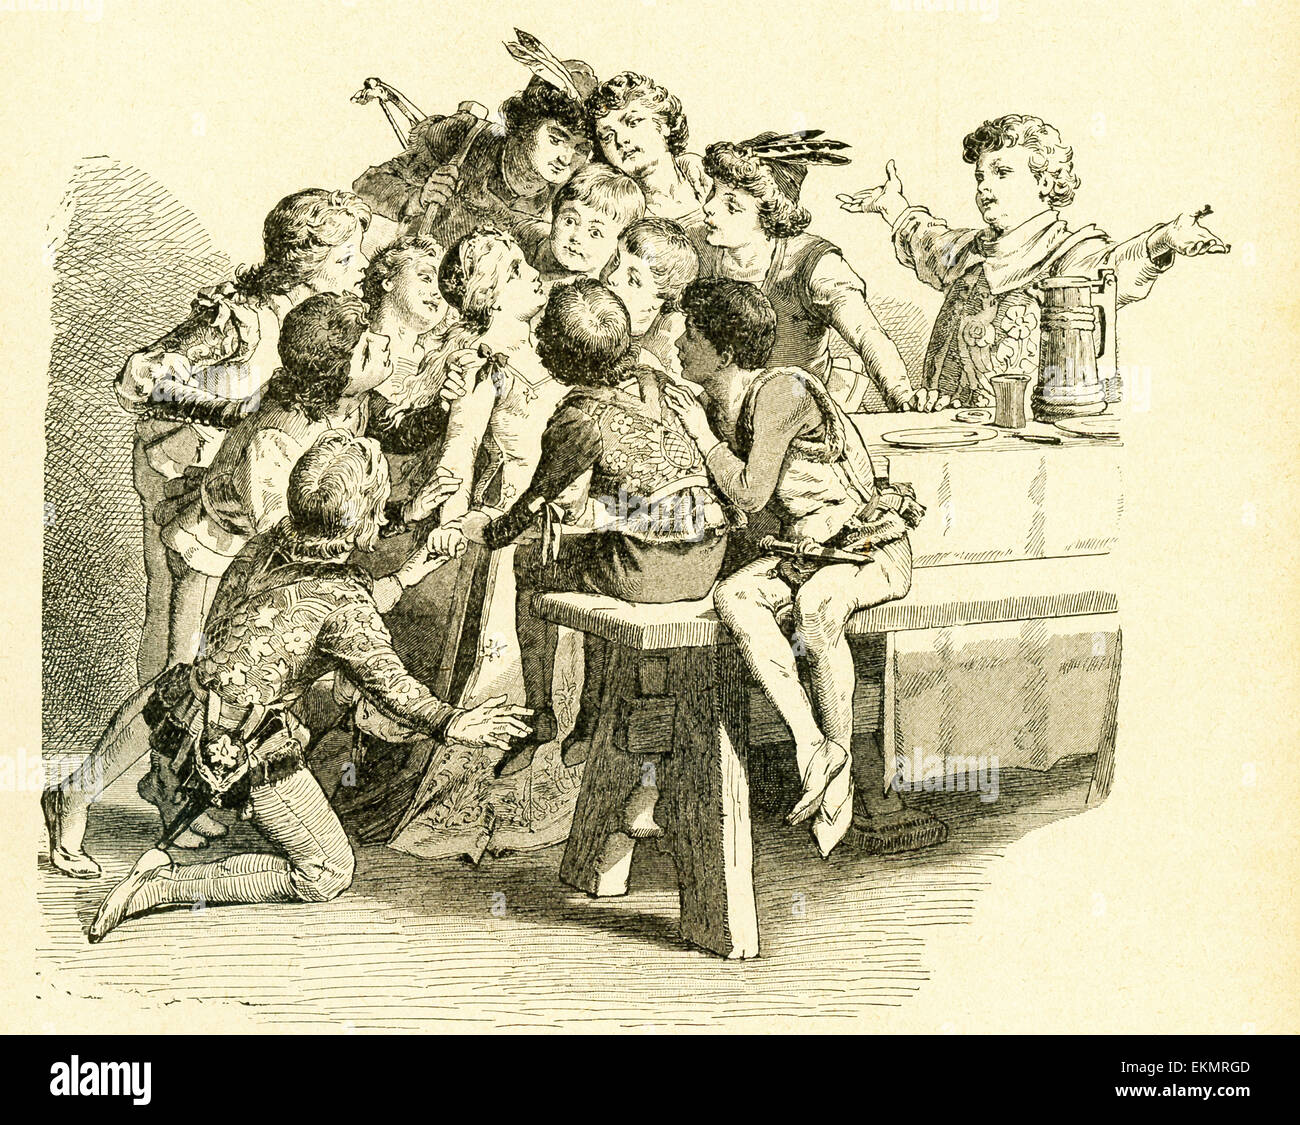 En 1812, les frères Grimm, Jacob et Wilhelm, publié contes pour enfants, une collection contes allemands. Cette illustration accompagnée du conte "Les douze Frères", qui dit d'un roi qui a planifié de tuer son fils 12 lorsqu'une fille est née. Les garçons ont appris de cette situation et s'enfuit vers les bois des années plus tard, la fille apprend ainsi et les a trouvés dans la forêt. Ici les frères sont réunis avec leur soeur pour la première fois. Cette image est de Grimms Eventyr (Grimm's Fairy Tales) par Carl Ewald, publié en 1922. Le frontispice a l'illustrations de Philip Grot Johann Banque D'Images